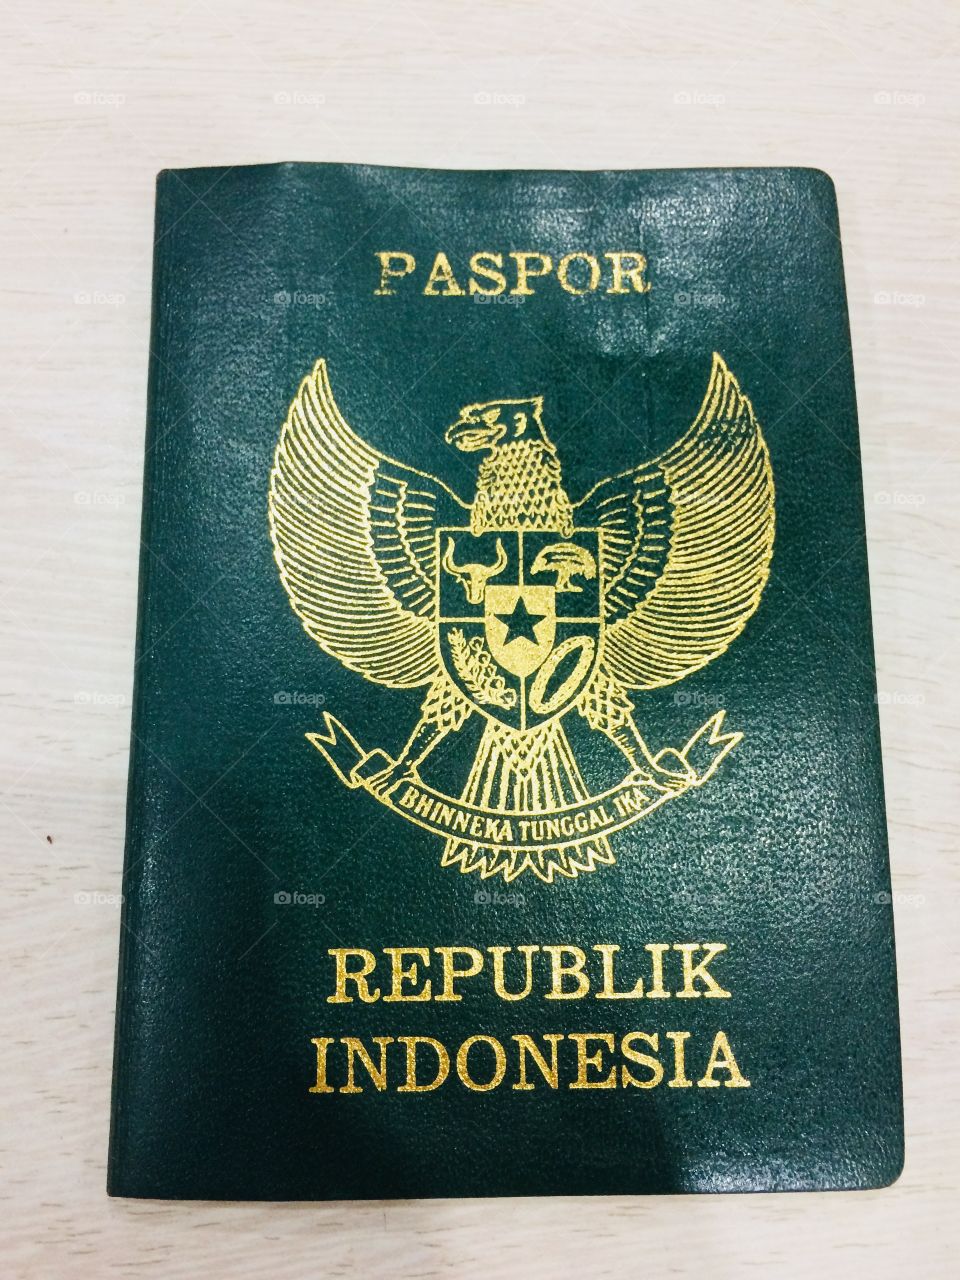 Passport Republic of Indonesia